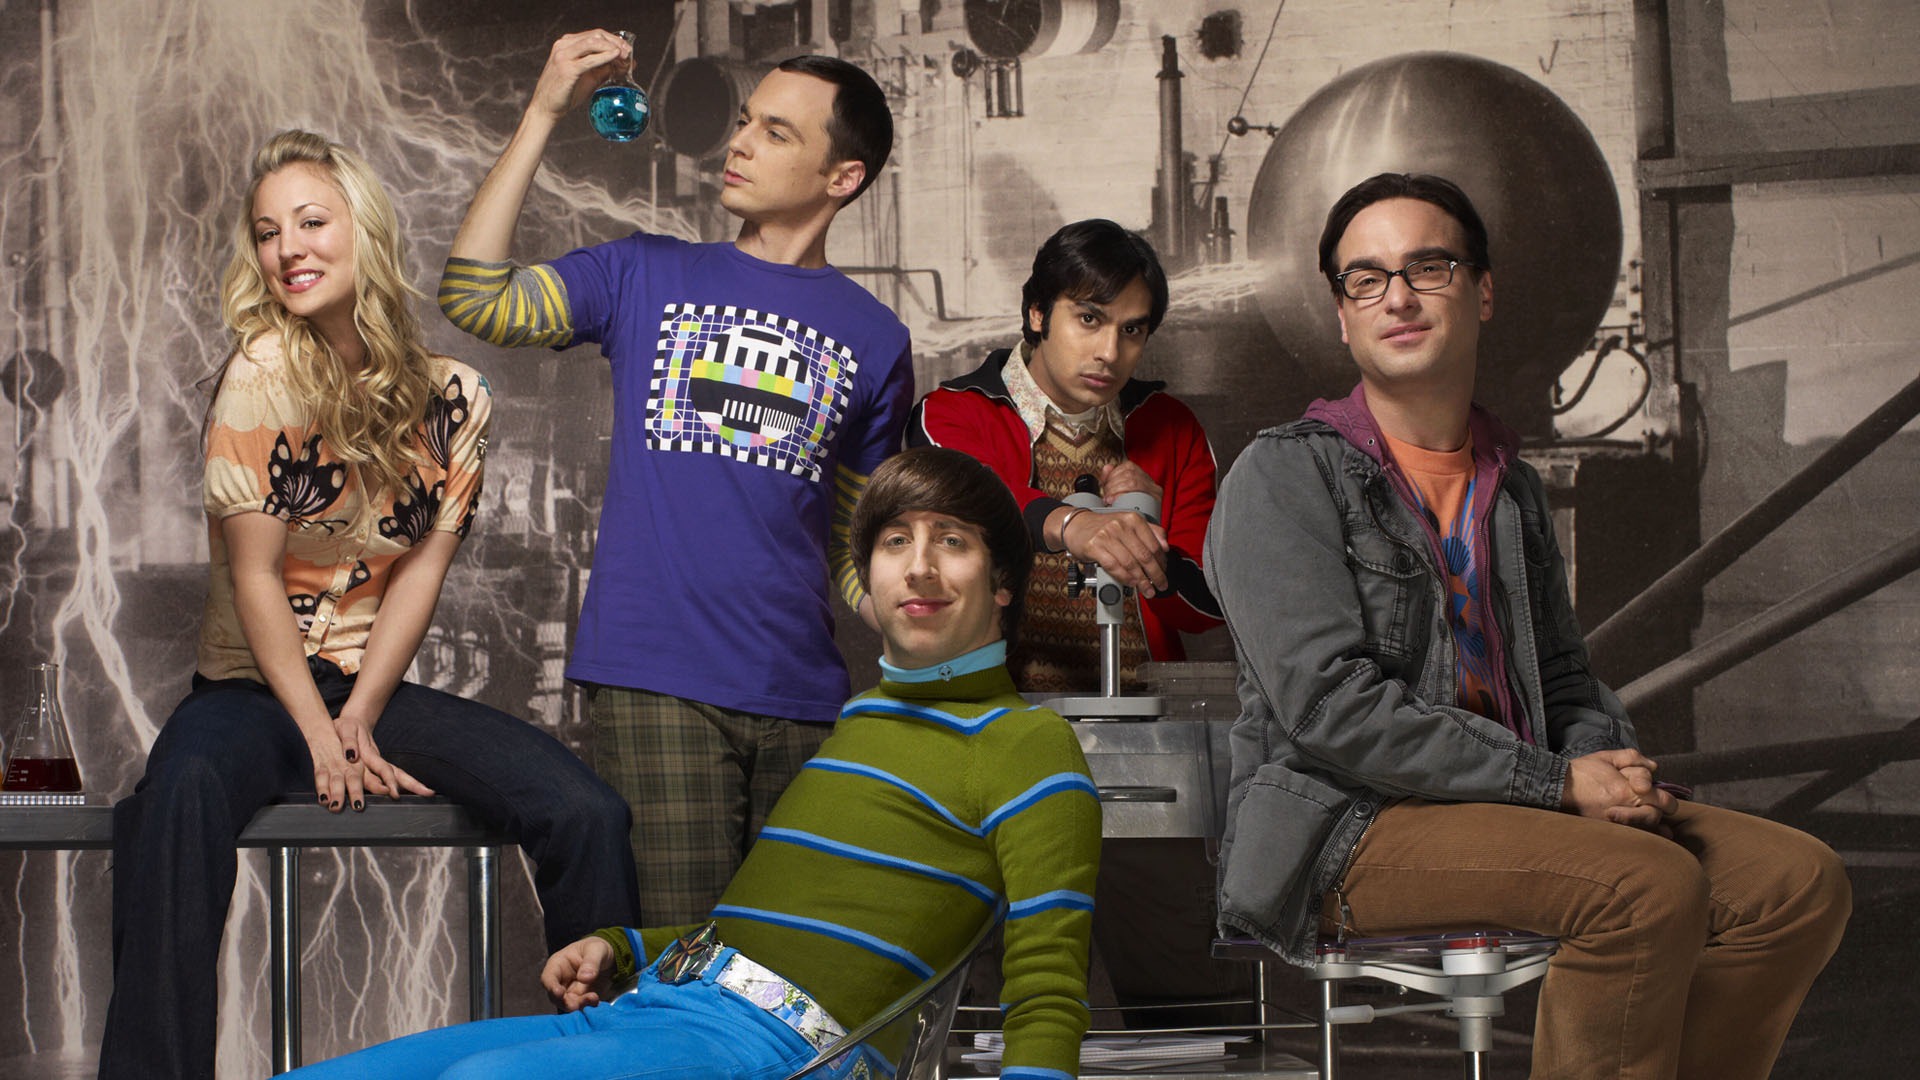 The Big Bang Theory 生活大爆炸 电视剧高清壁纸22 - 1920x1080